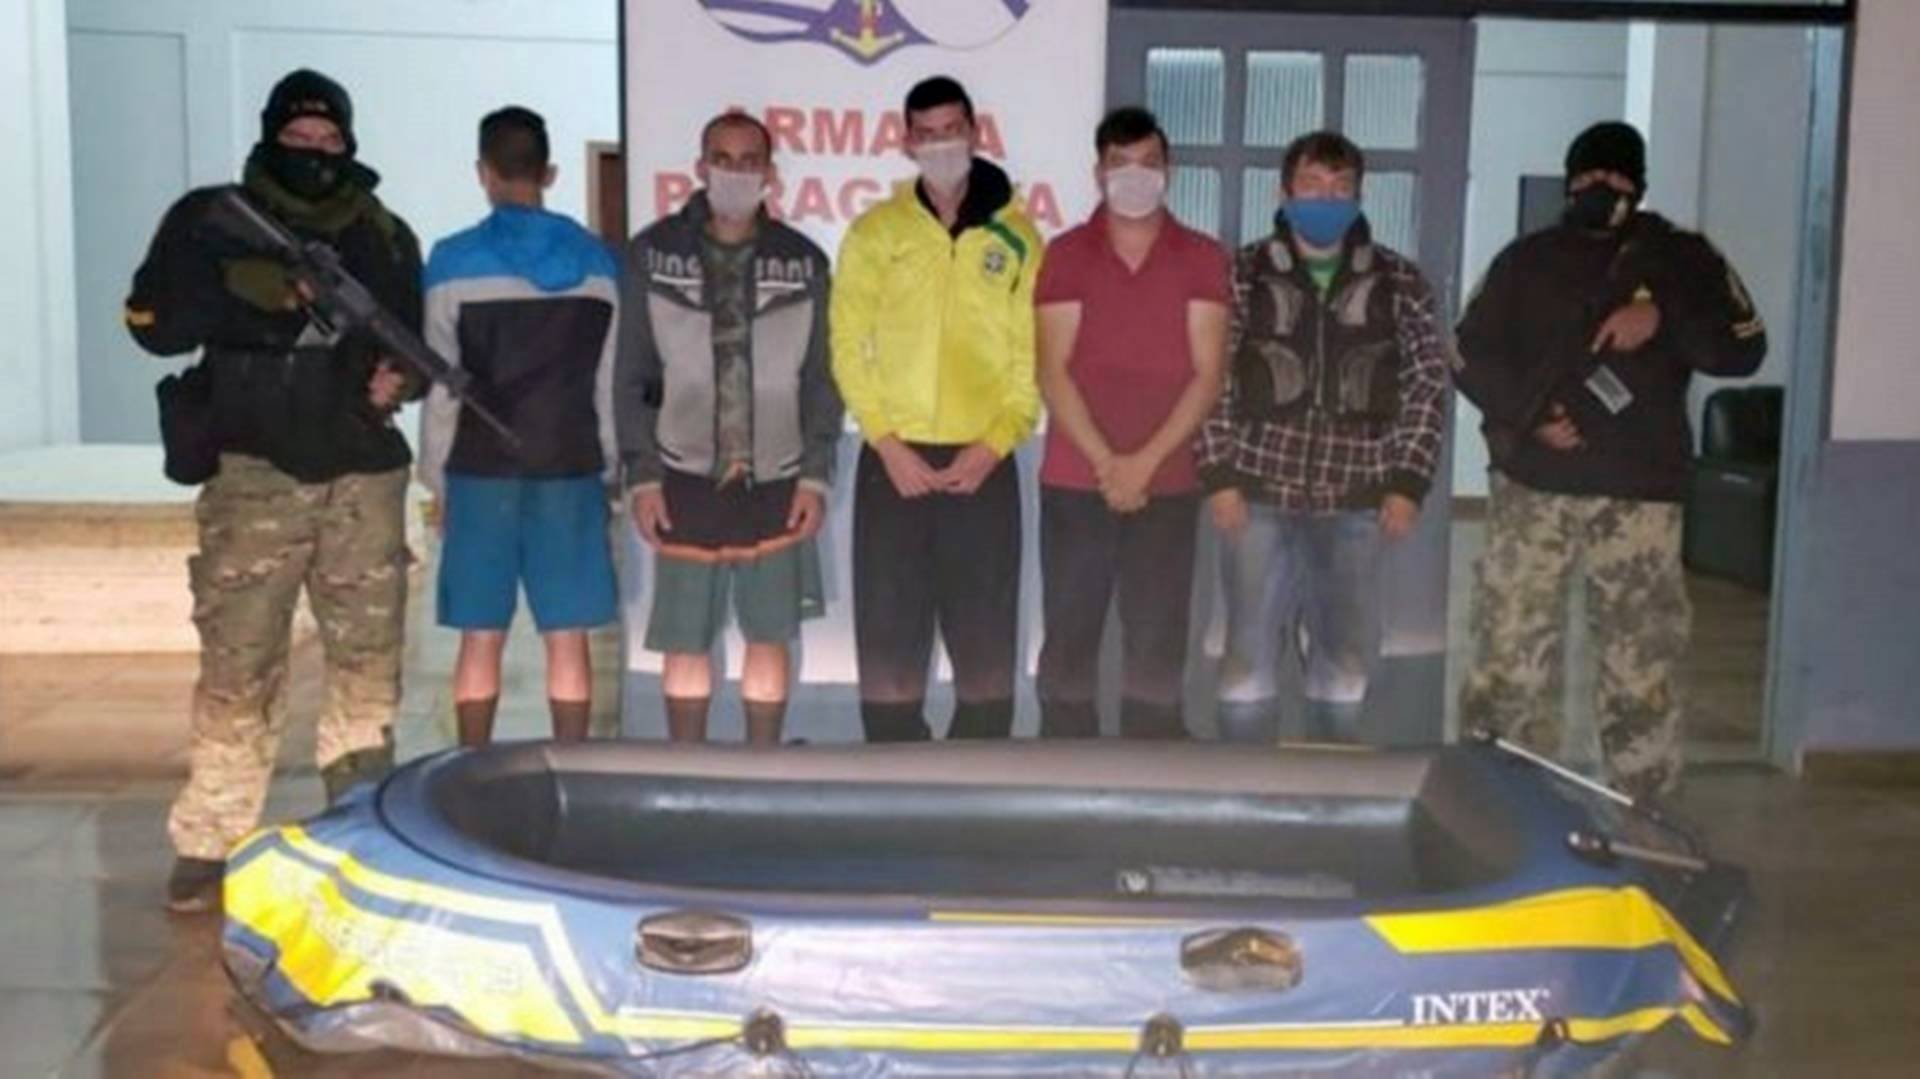 Cinco homens são presos tentando entrar no Paraguai em um bote inflável